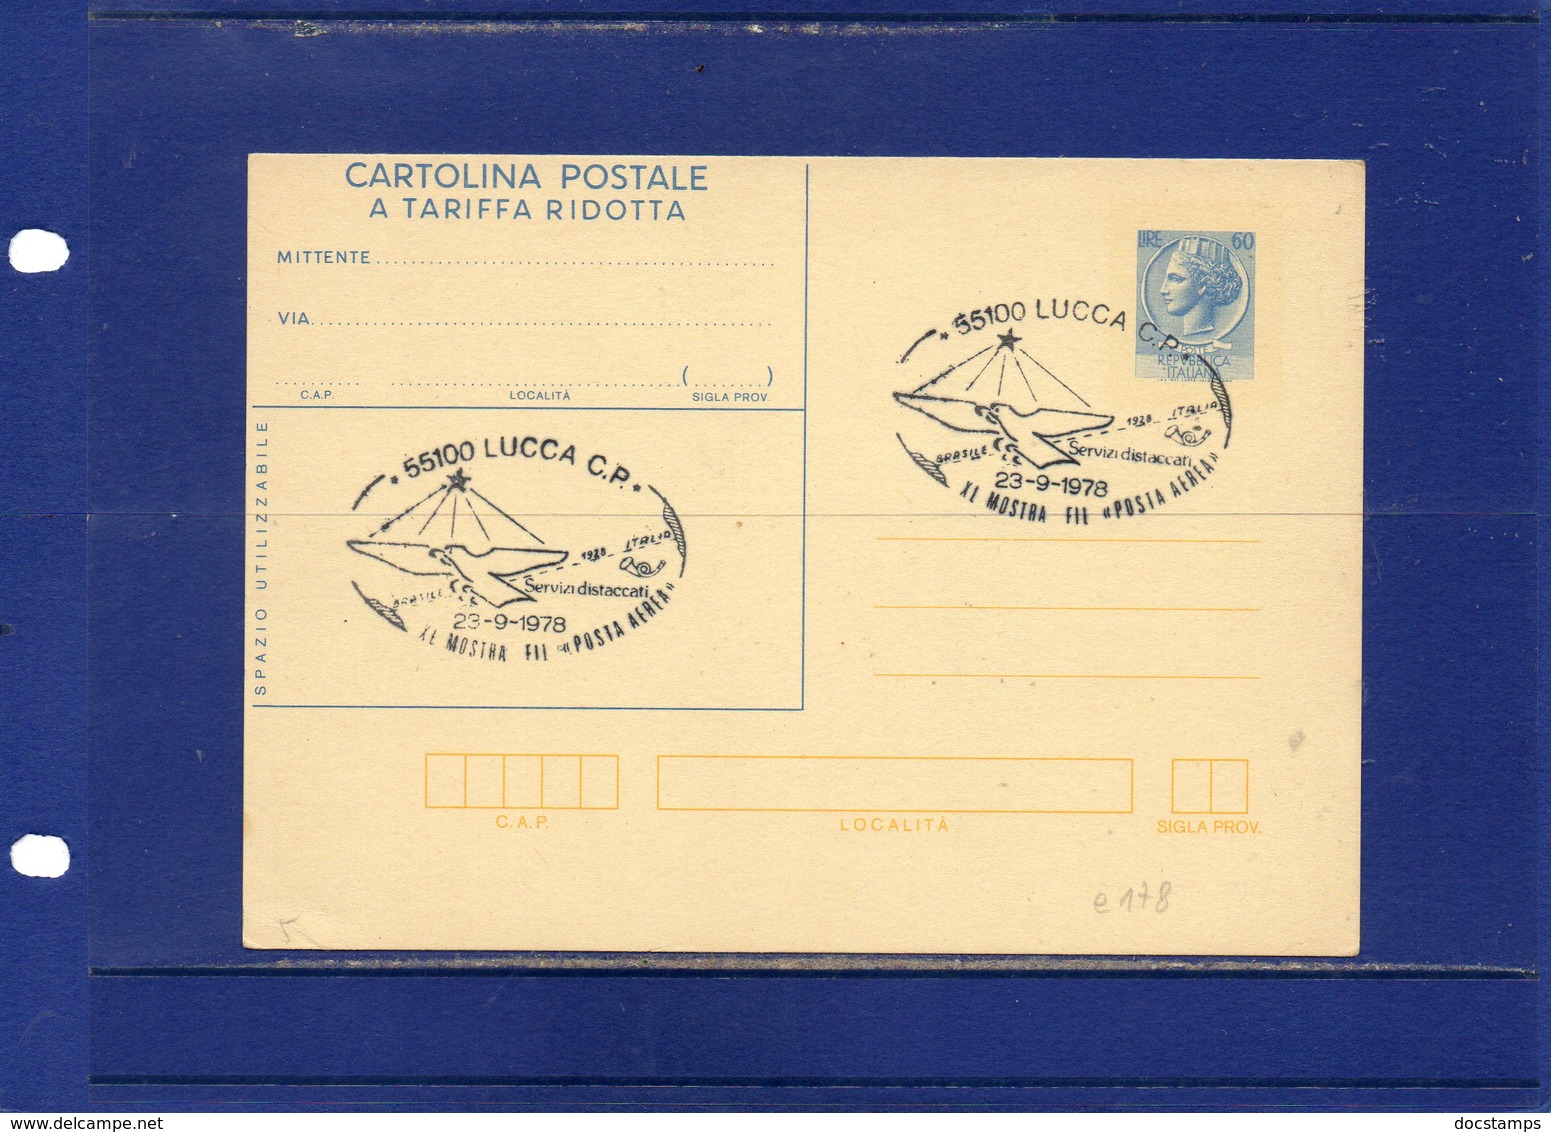 ##(ANT10)-1978-cartolina Postale Tariffa Ridotta L.60 Filagrano C178 Annullo Speciale Lucca-Mostra Posta Aerea + Retro - Interi Postali